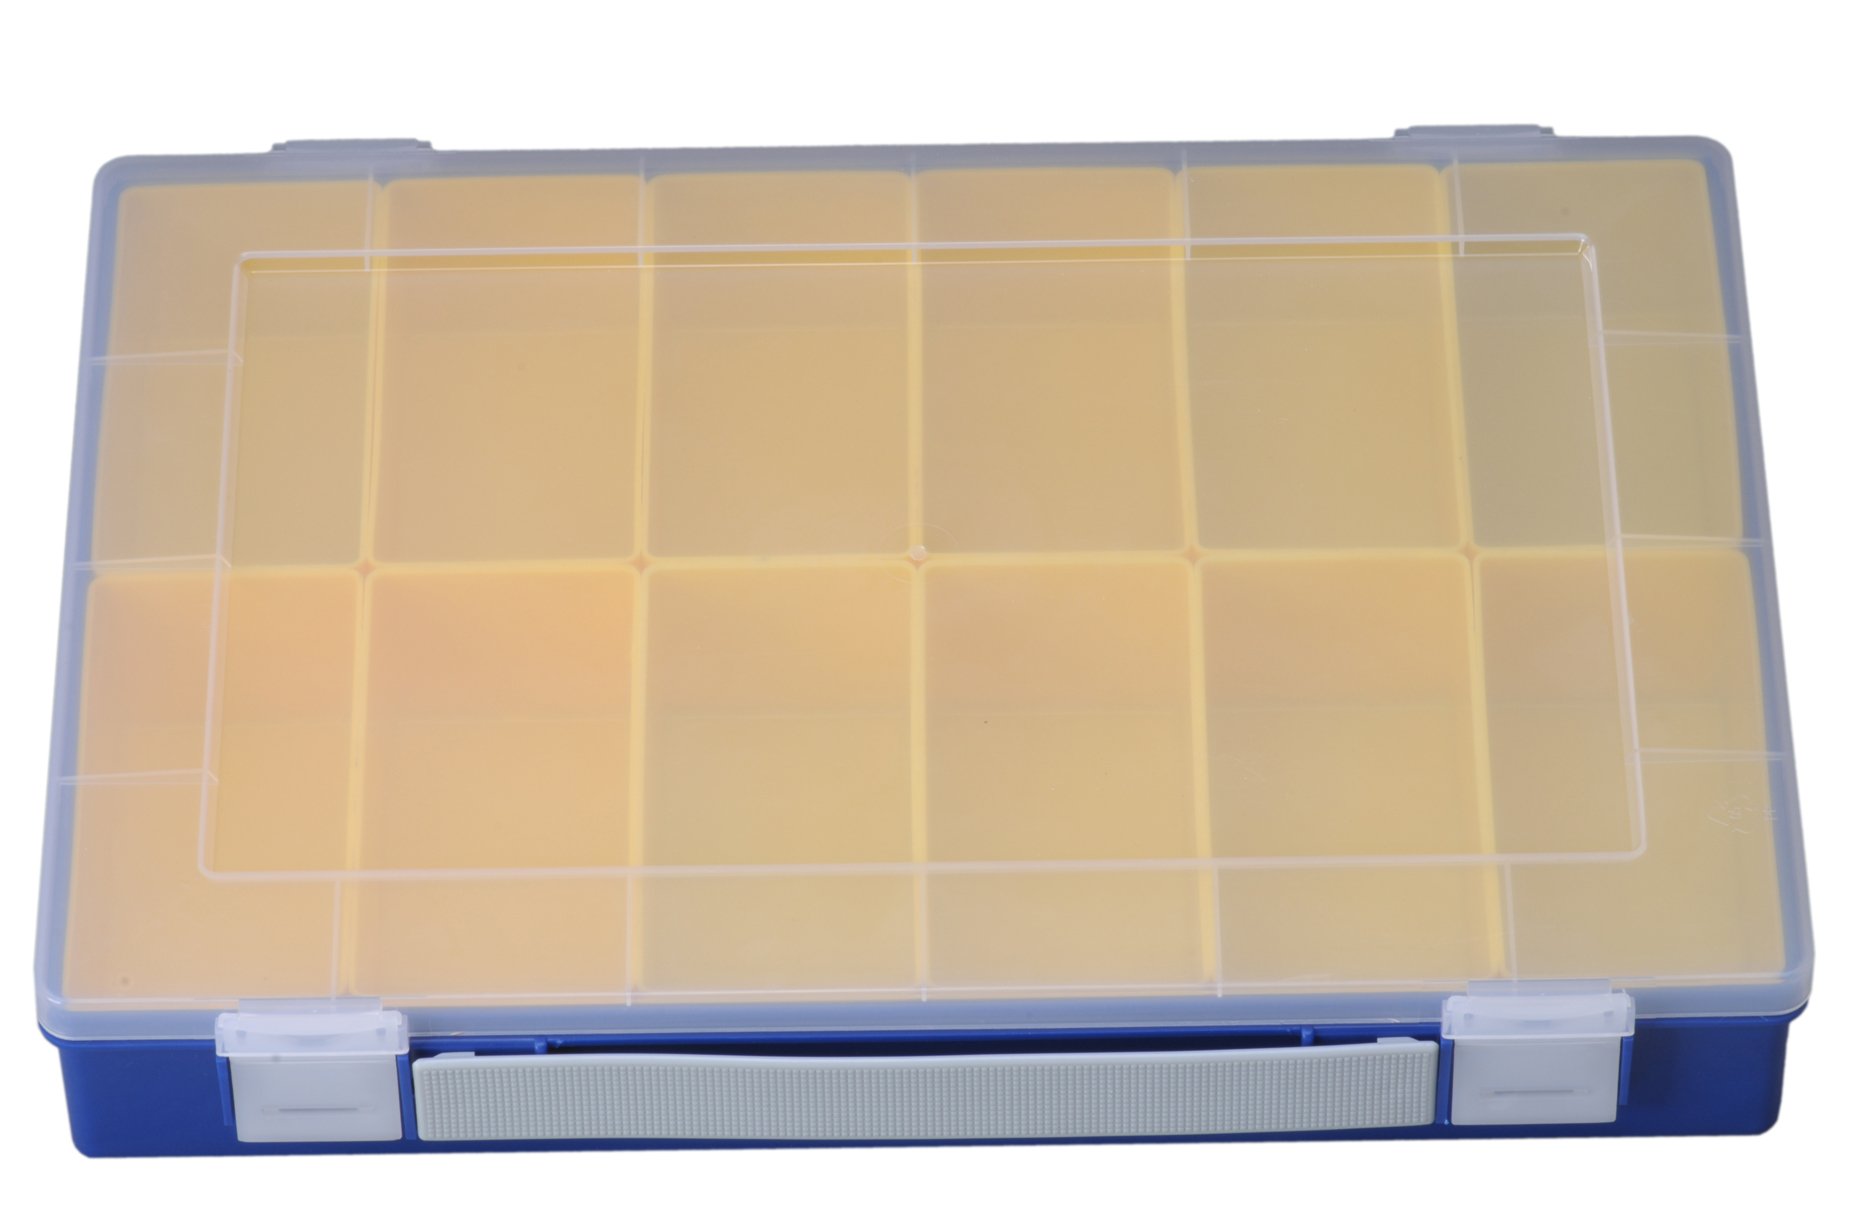 hünersdorff Sortimentskasten PP-Premium mit 12 Einsatzboxen | Tragegriff | stabile Sortierbox für Schrauben und andere Kleinteile | herausnehmbare Einsätze | 22,5 x 33,5 x 5,5 cm, blau von hünersdorff